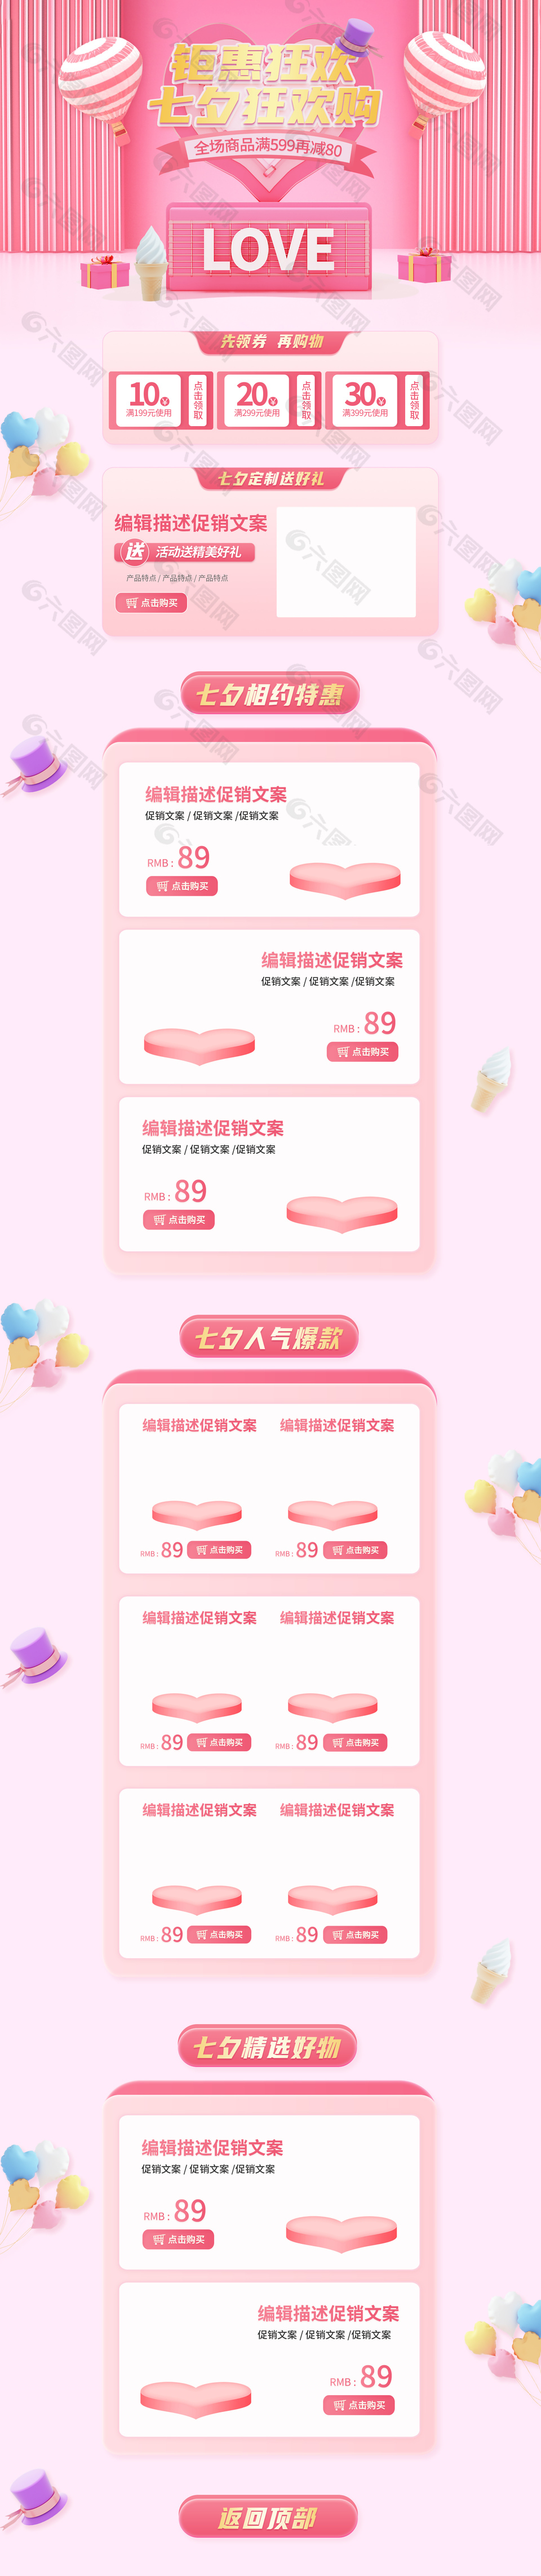 淘宝首页七夕特惠爆款好物粉色模板设计